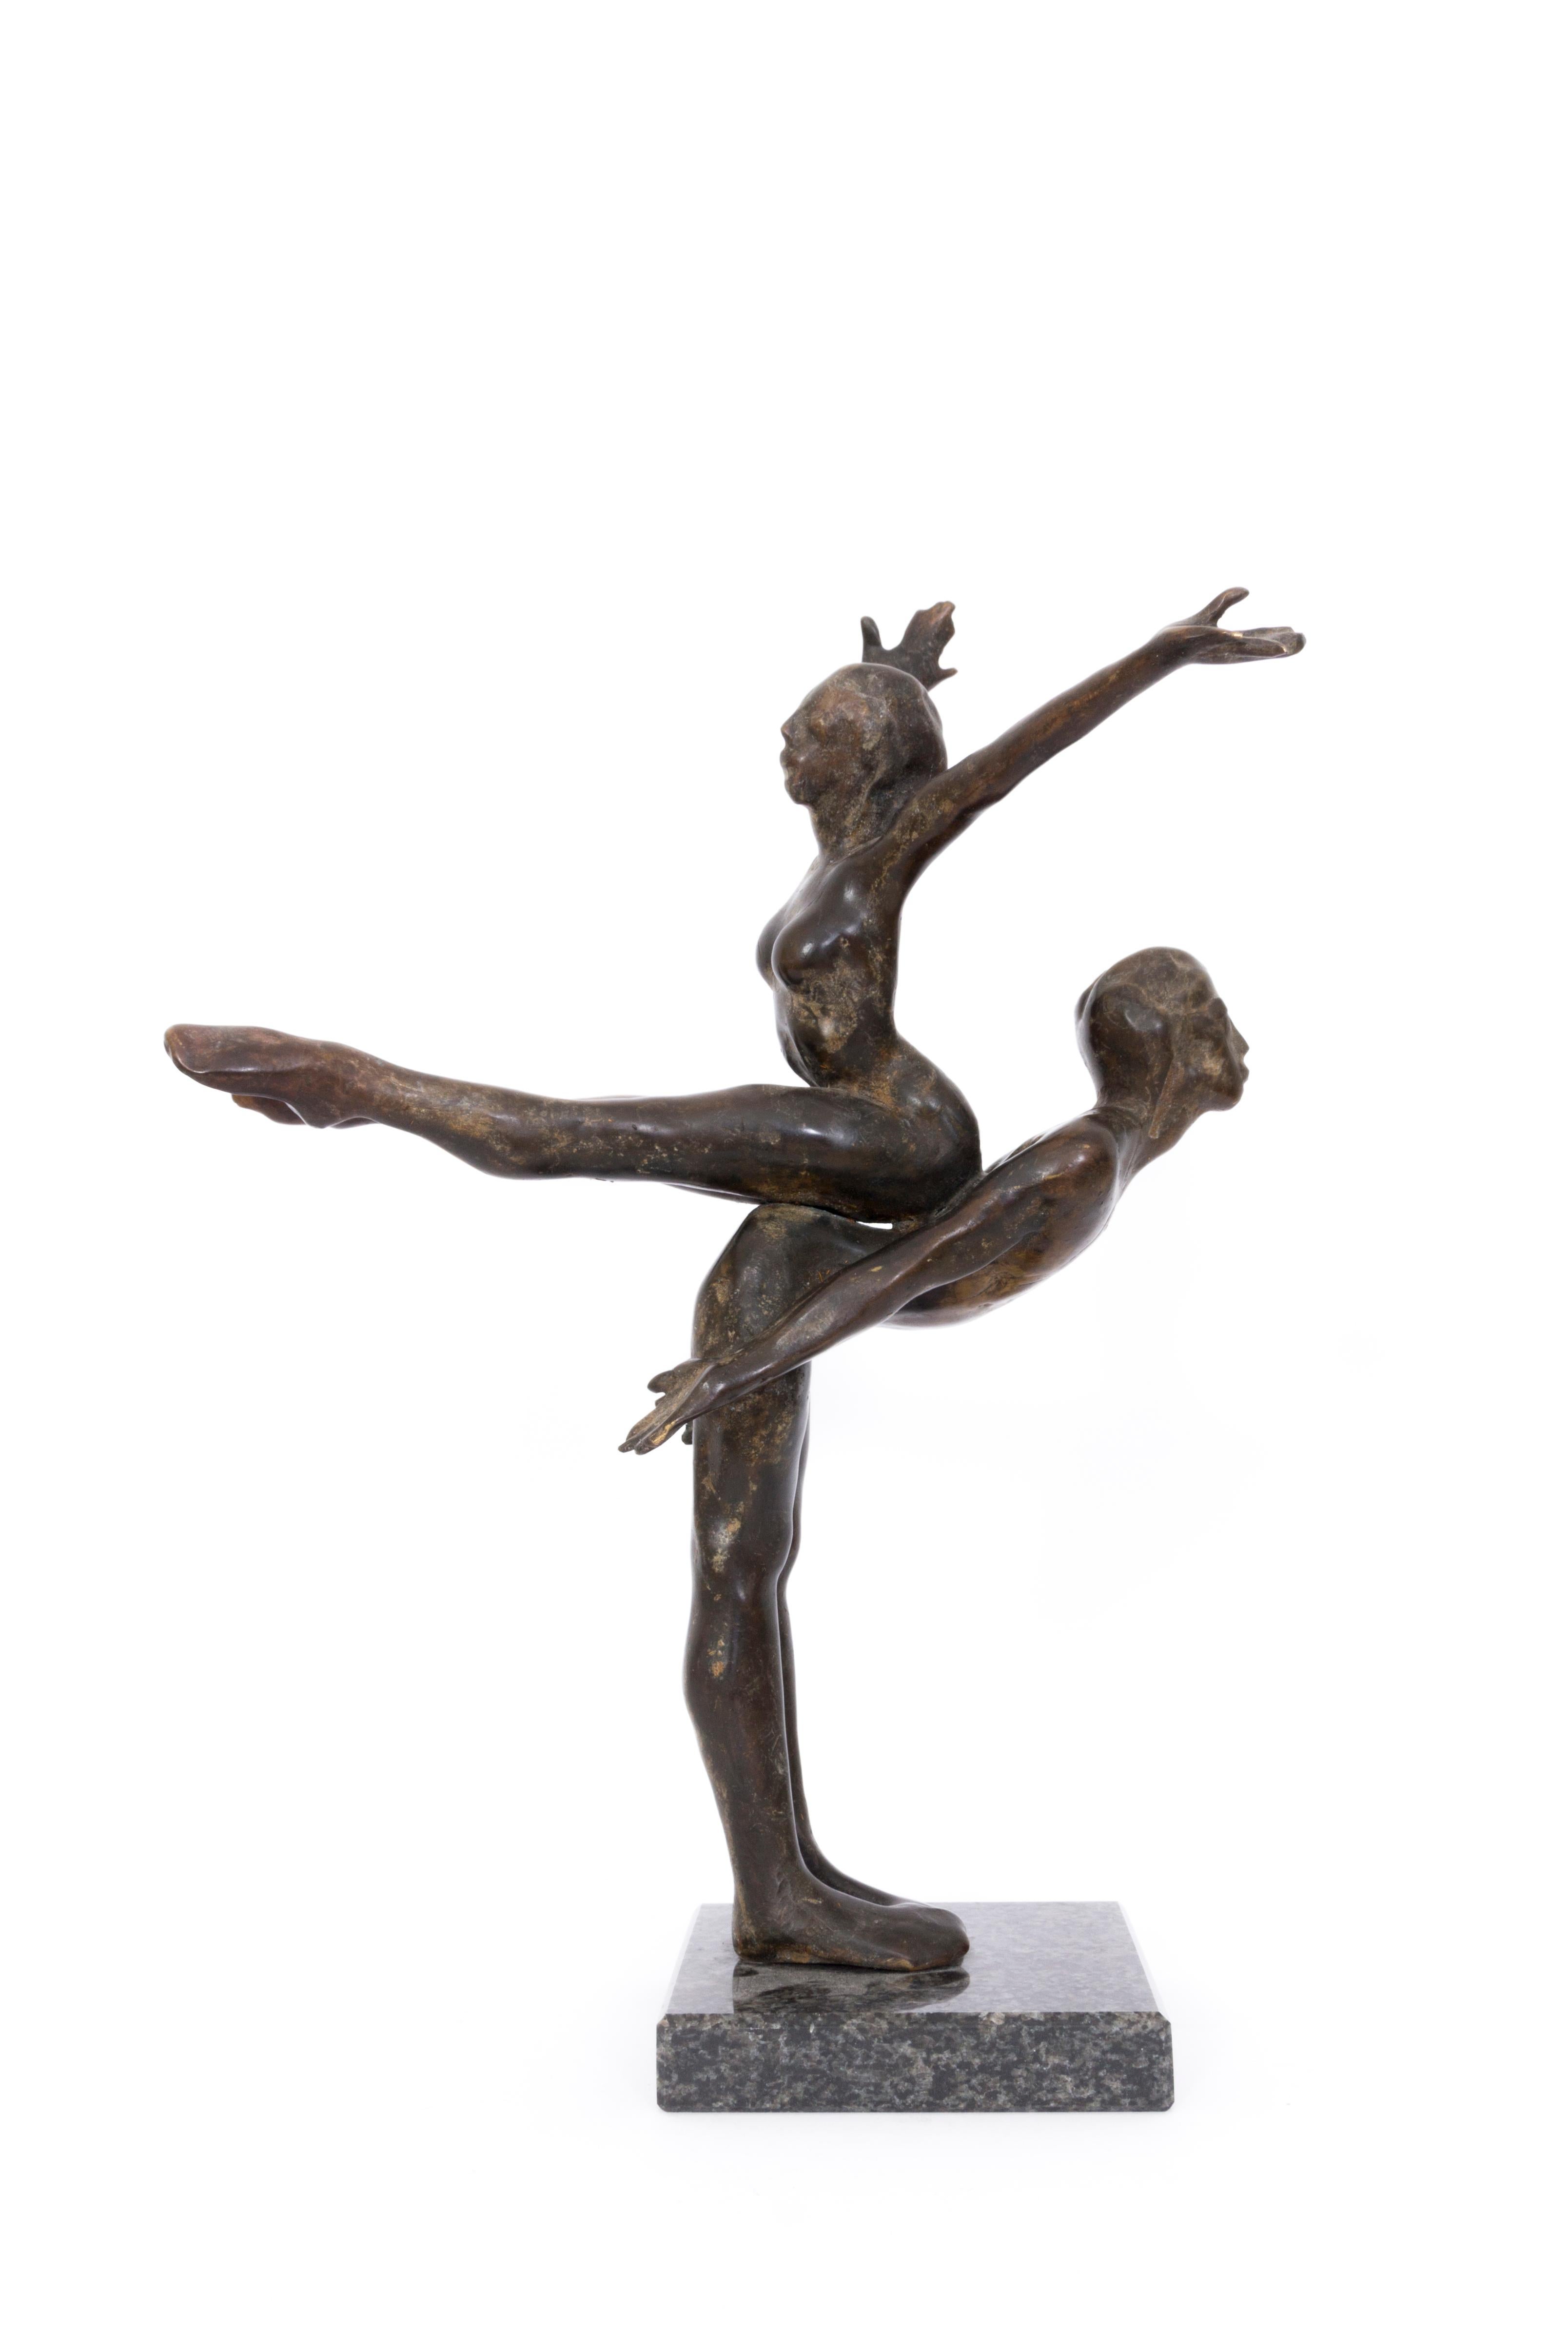 John W. Mills Figurative Sculpture - Jerome Robbins